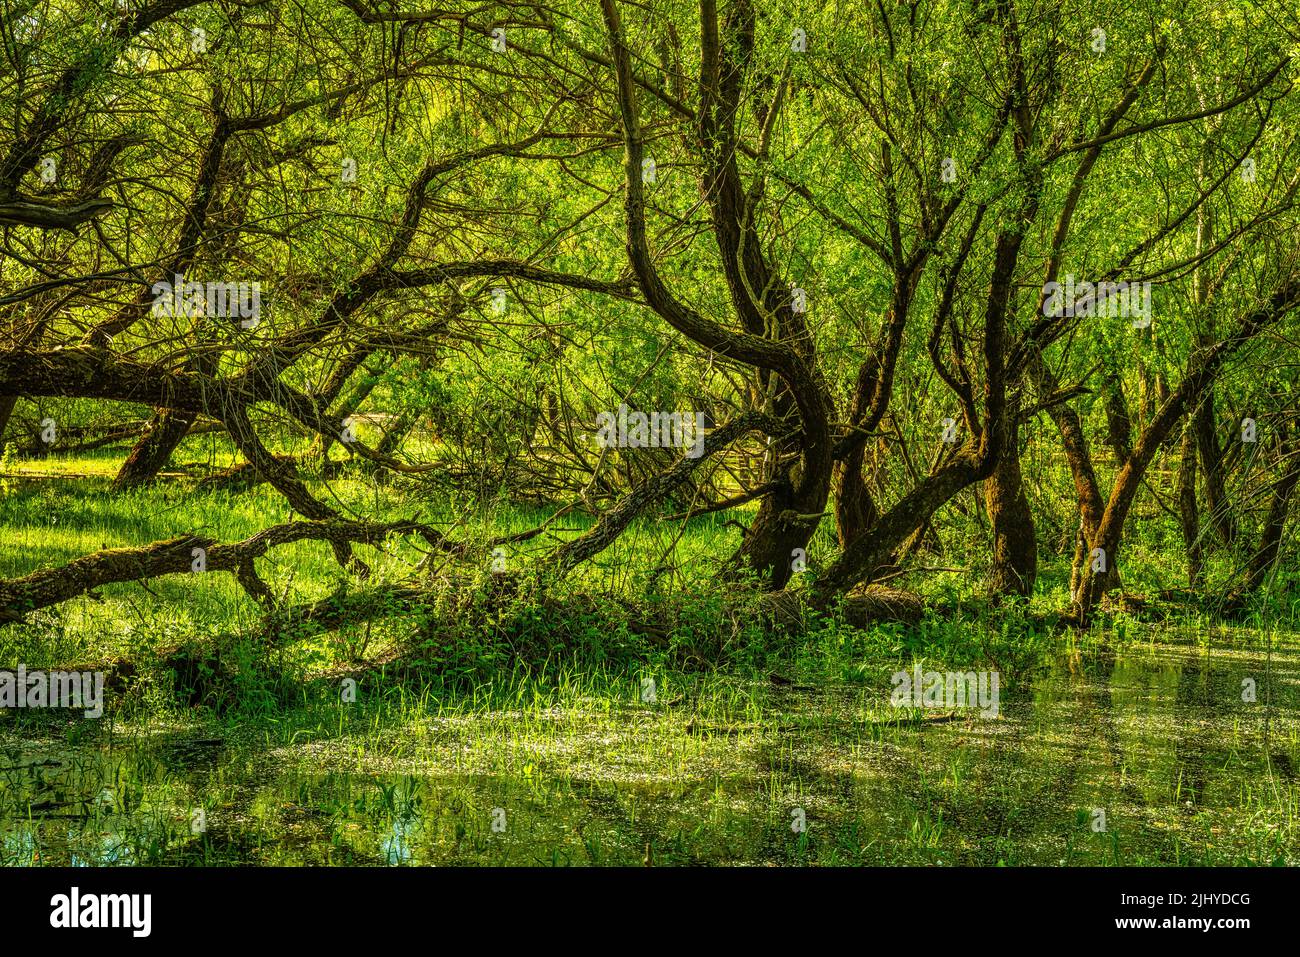 Los troncos de sauce se reflejan en las aguas del Lago Barrea. Villetta Barrea, provincia de L'Aquila, Abruzos, Italia, Europa Foto de stock